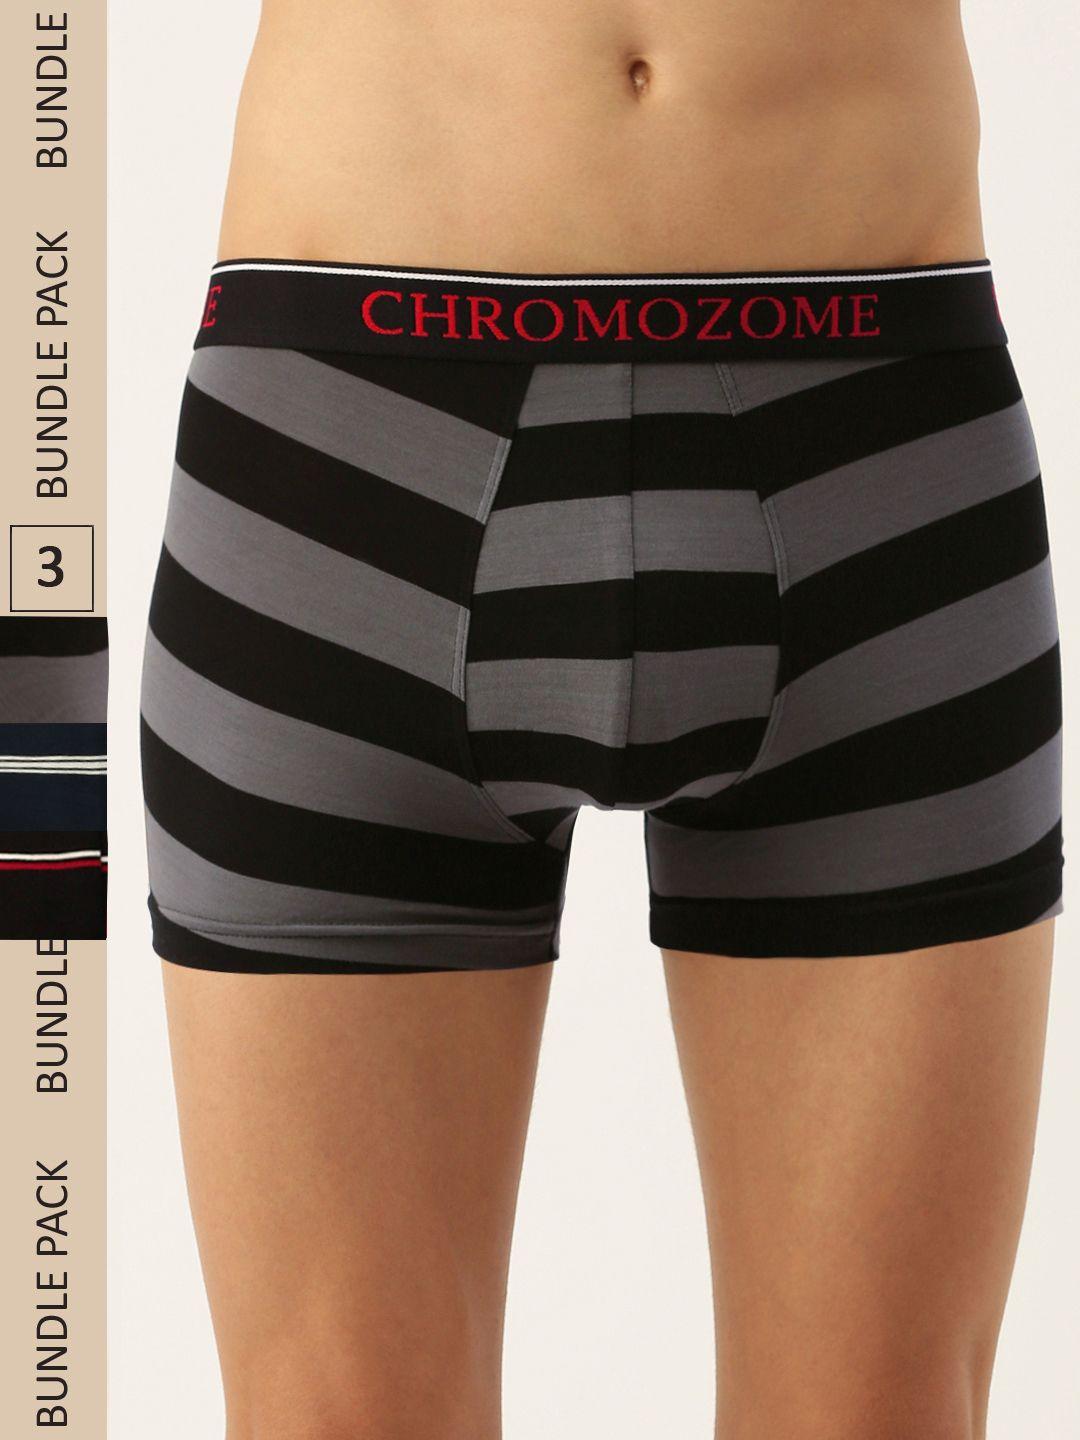 chromozome men pack of 3 ultra premium micro modal striper trunks 8902733643788